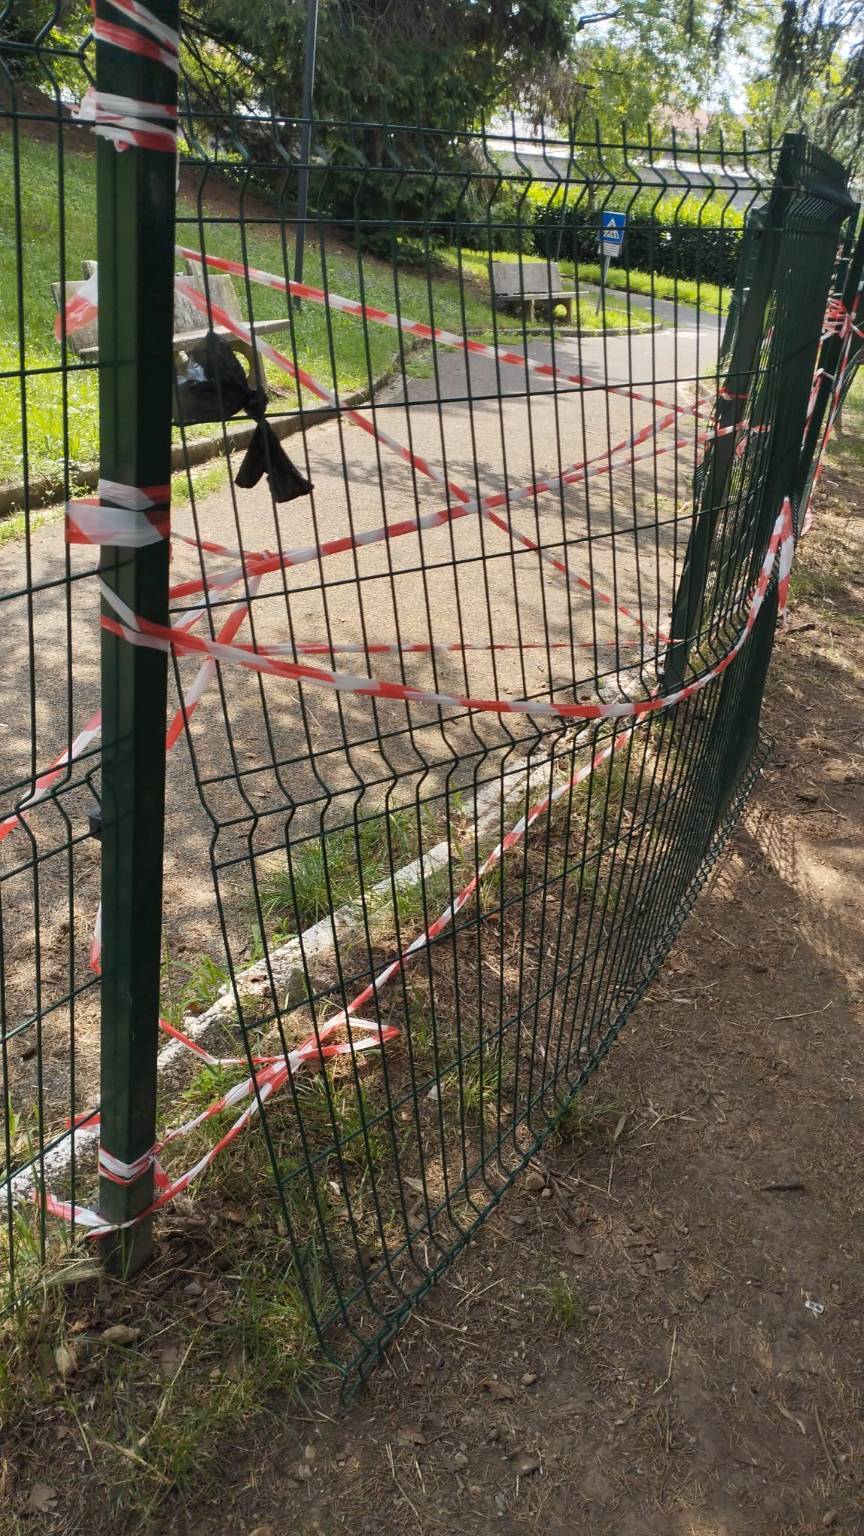 Atto vandalico nel weekend, chiusi a Saronno un parco e l'area cani